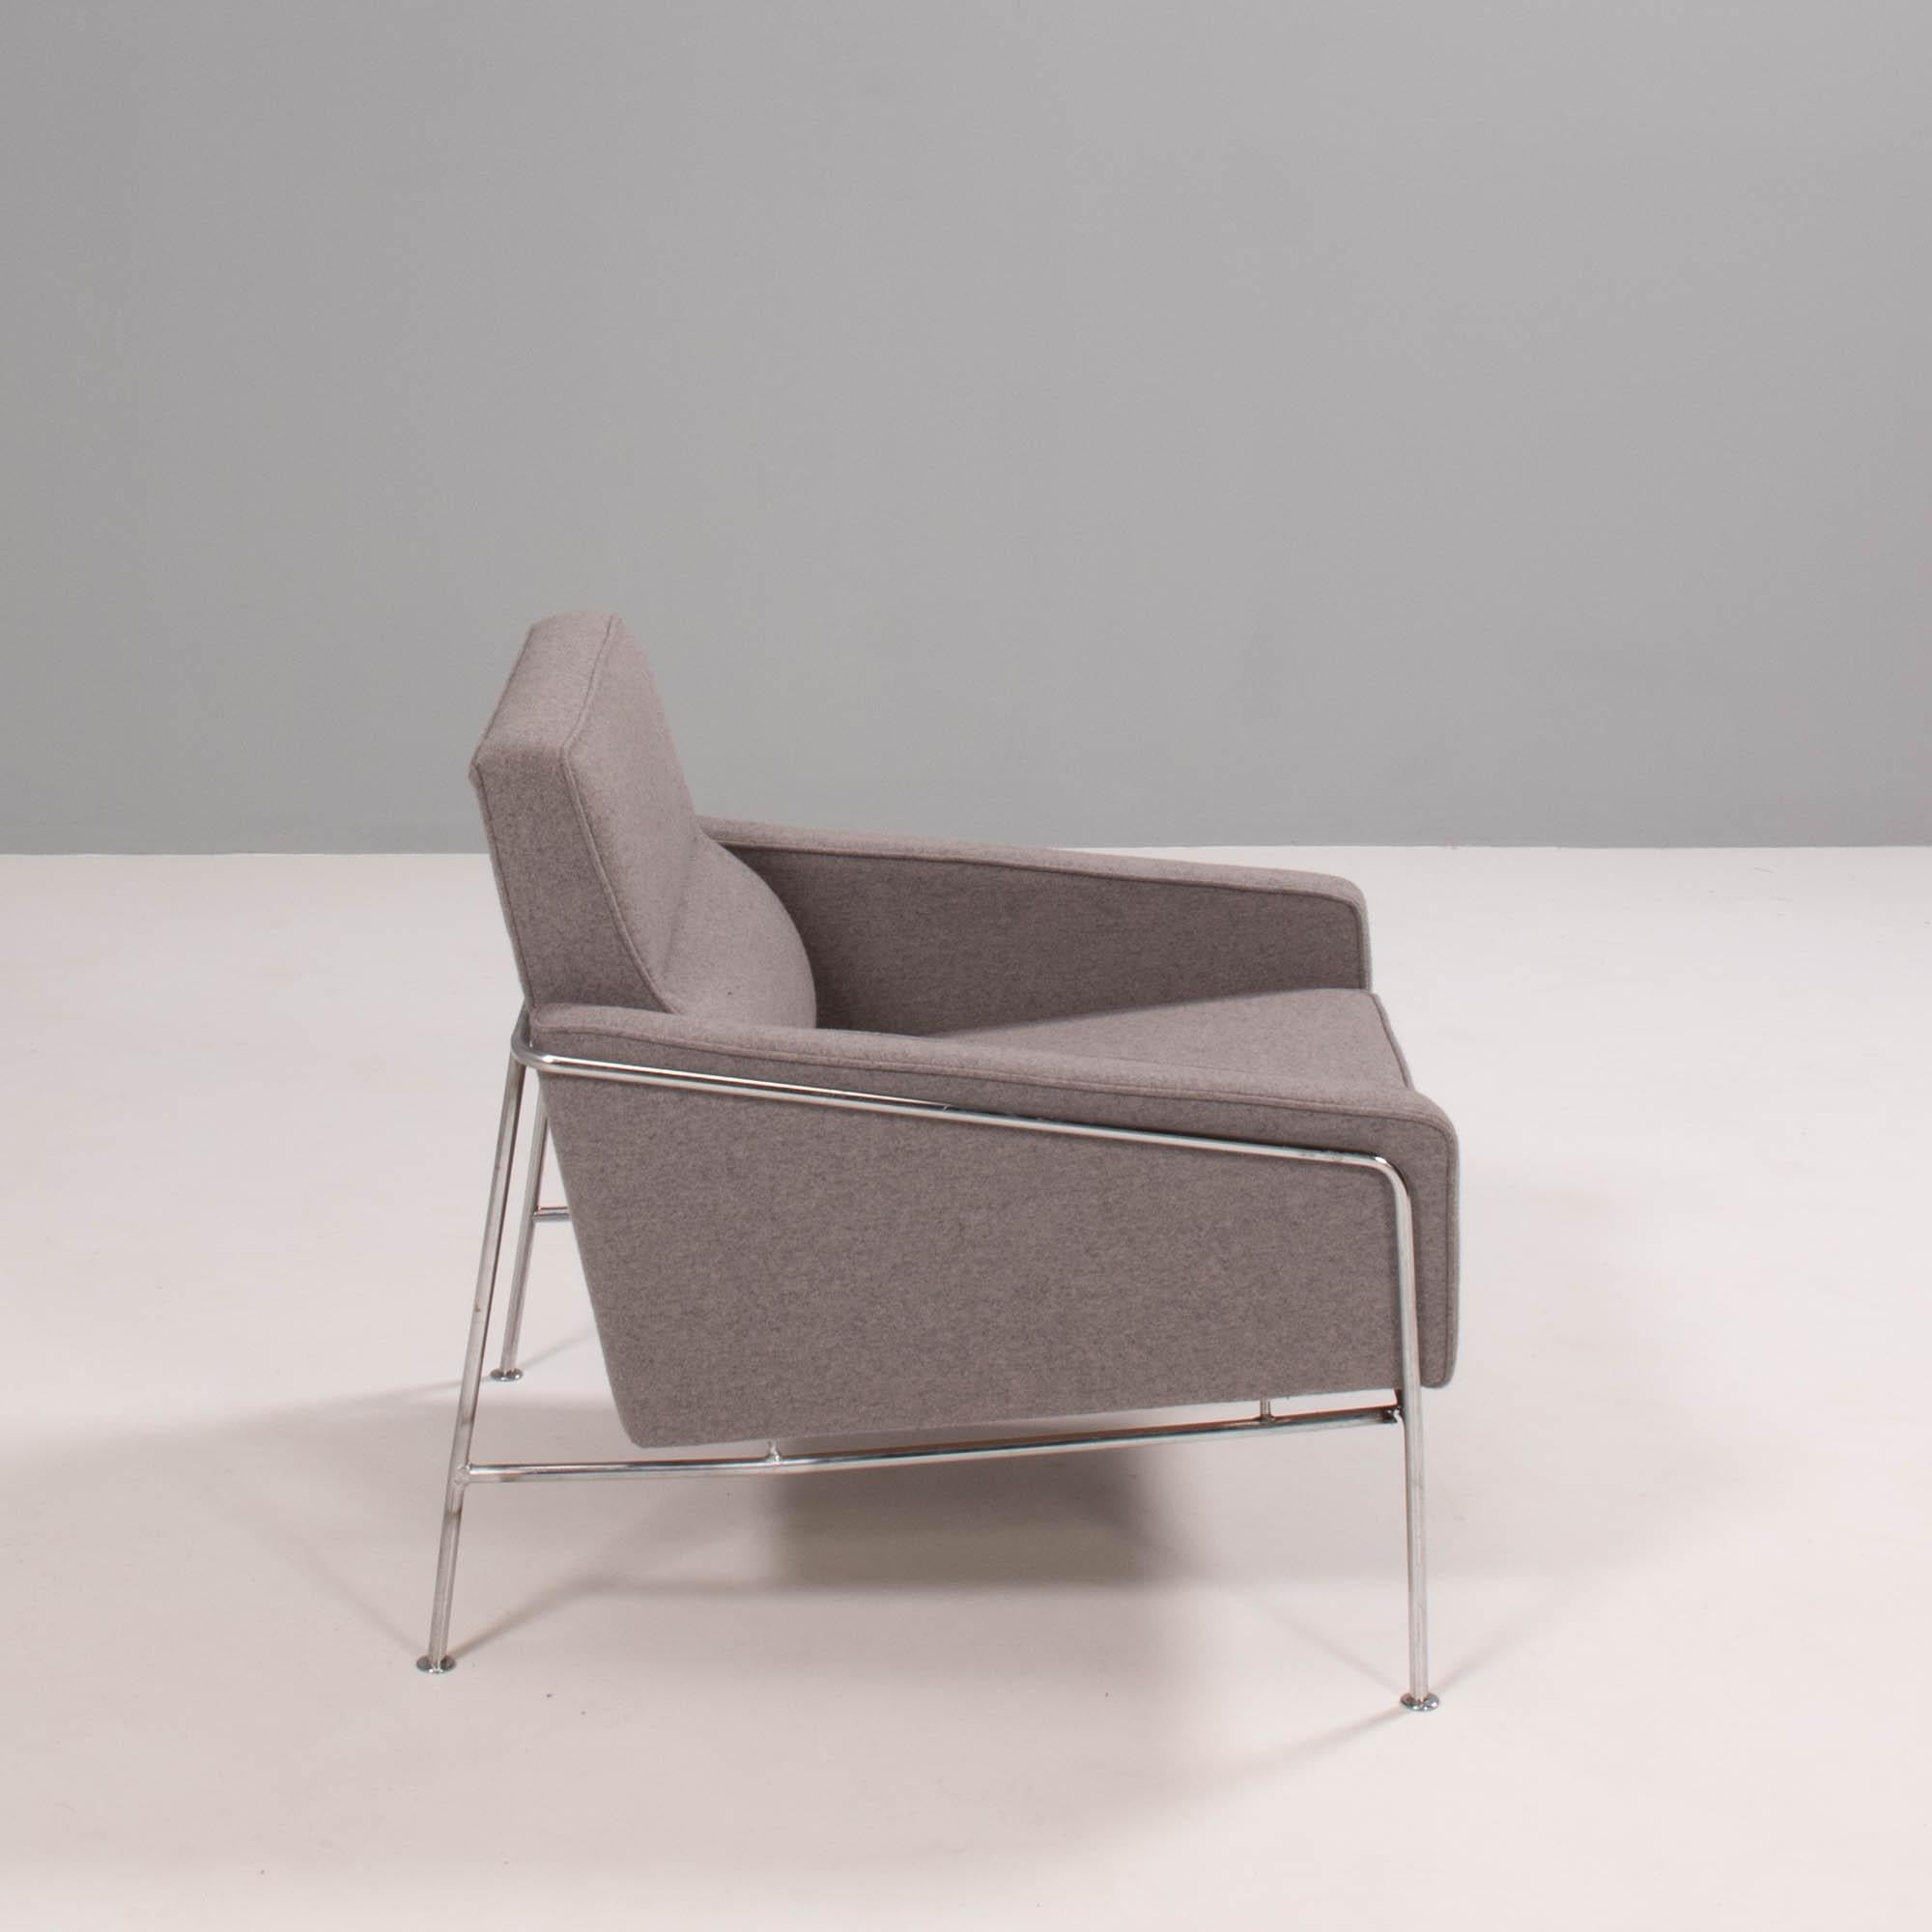 Conçue à l'origine par Arne Jacobsen pour l'aérogare SAS de Copenhague, la chaise de la série 3300 présente une esthétique futuriste.

Dotées d'une fine structure tubulaire chromée, les chaises sont tapissées de tissu gris avec des accoudoirs